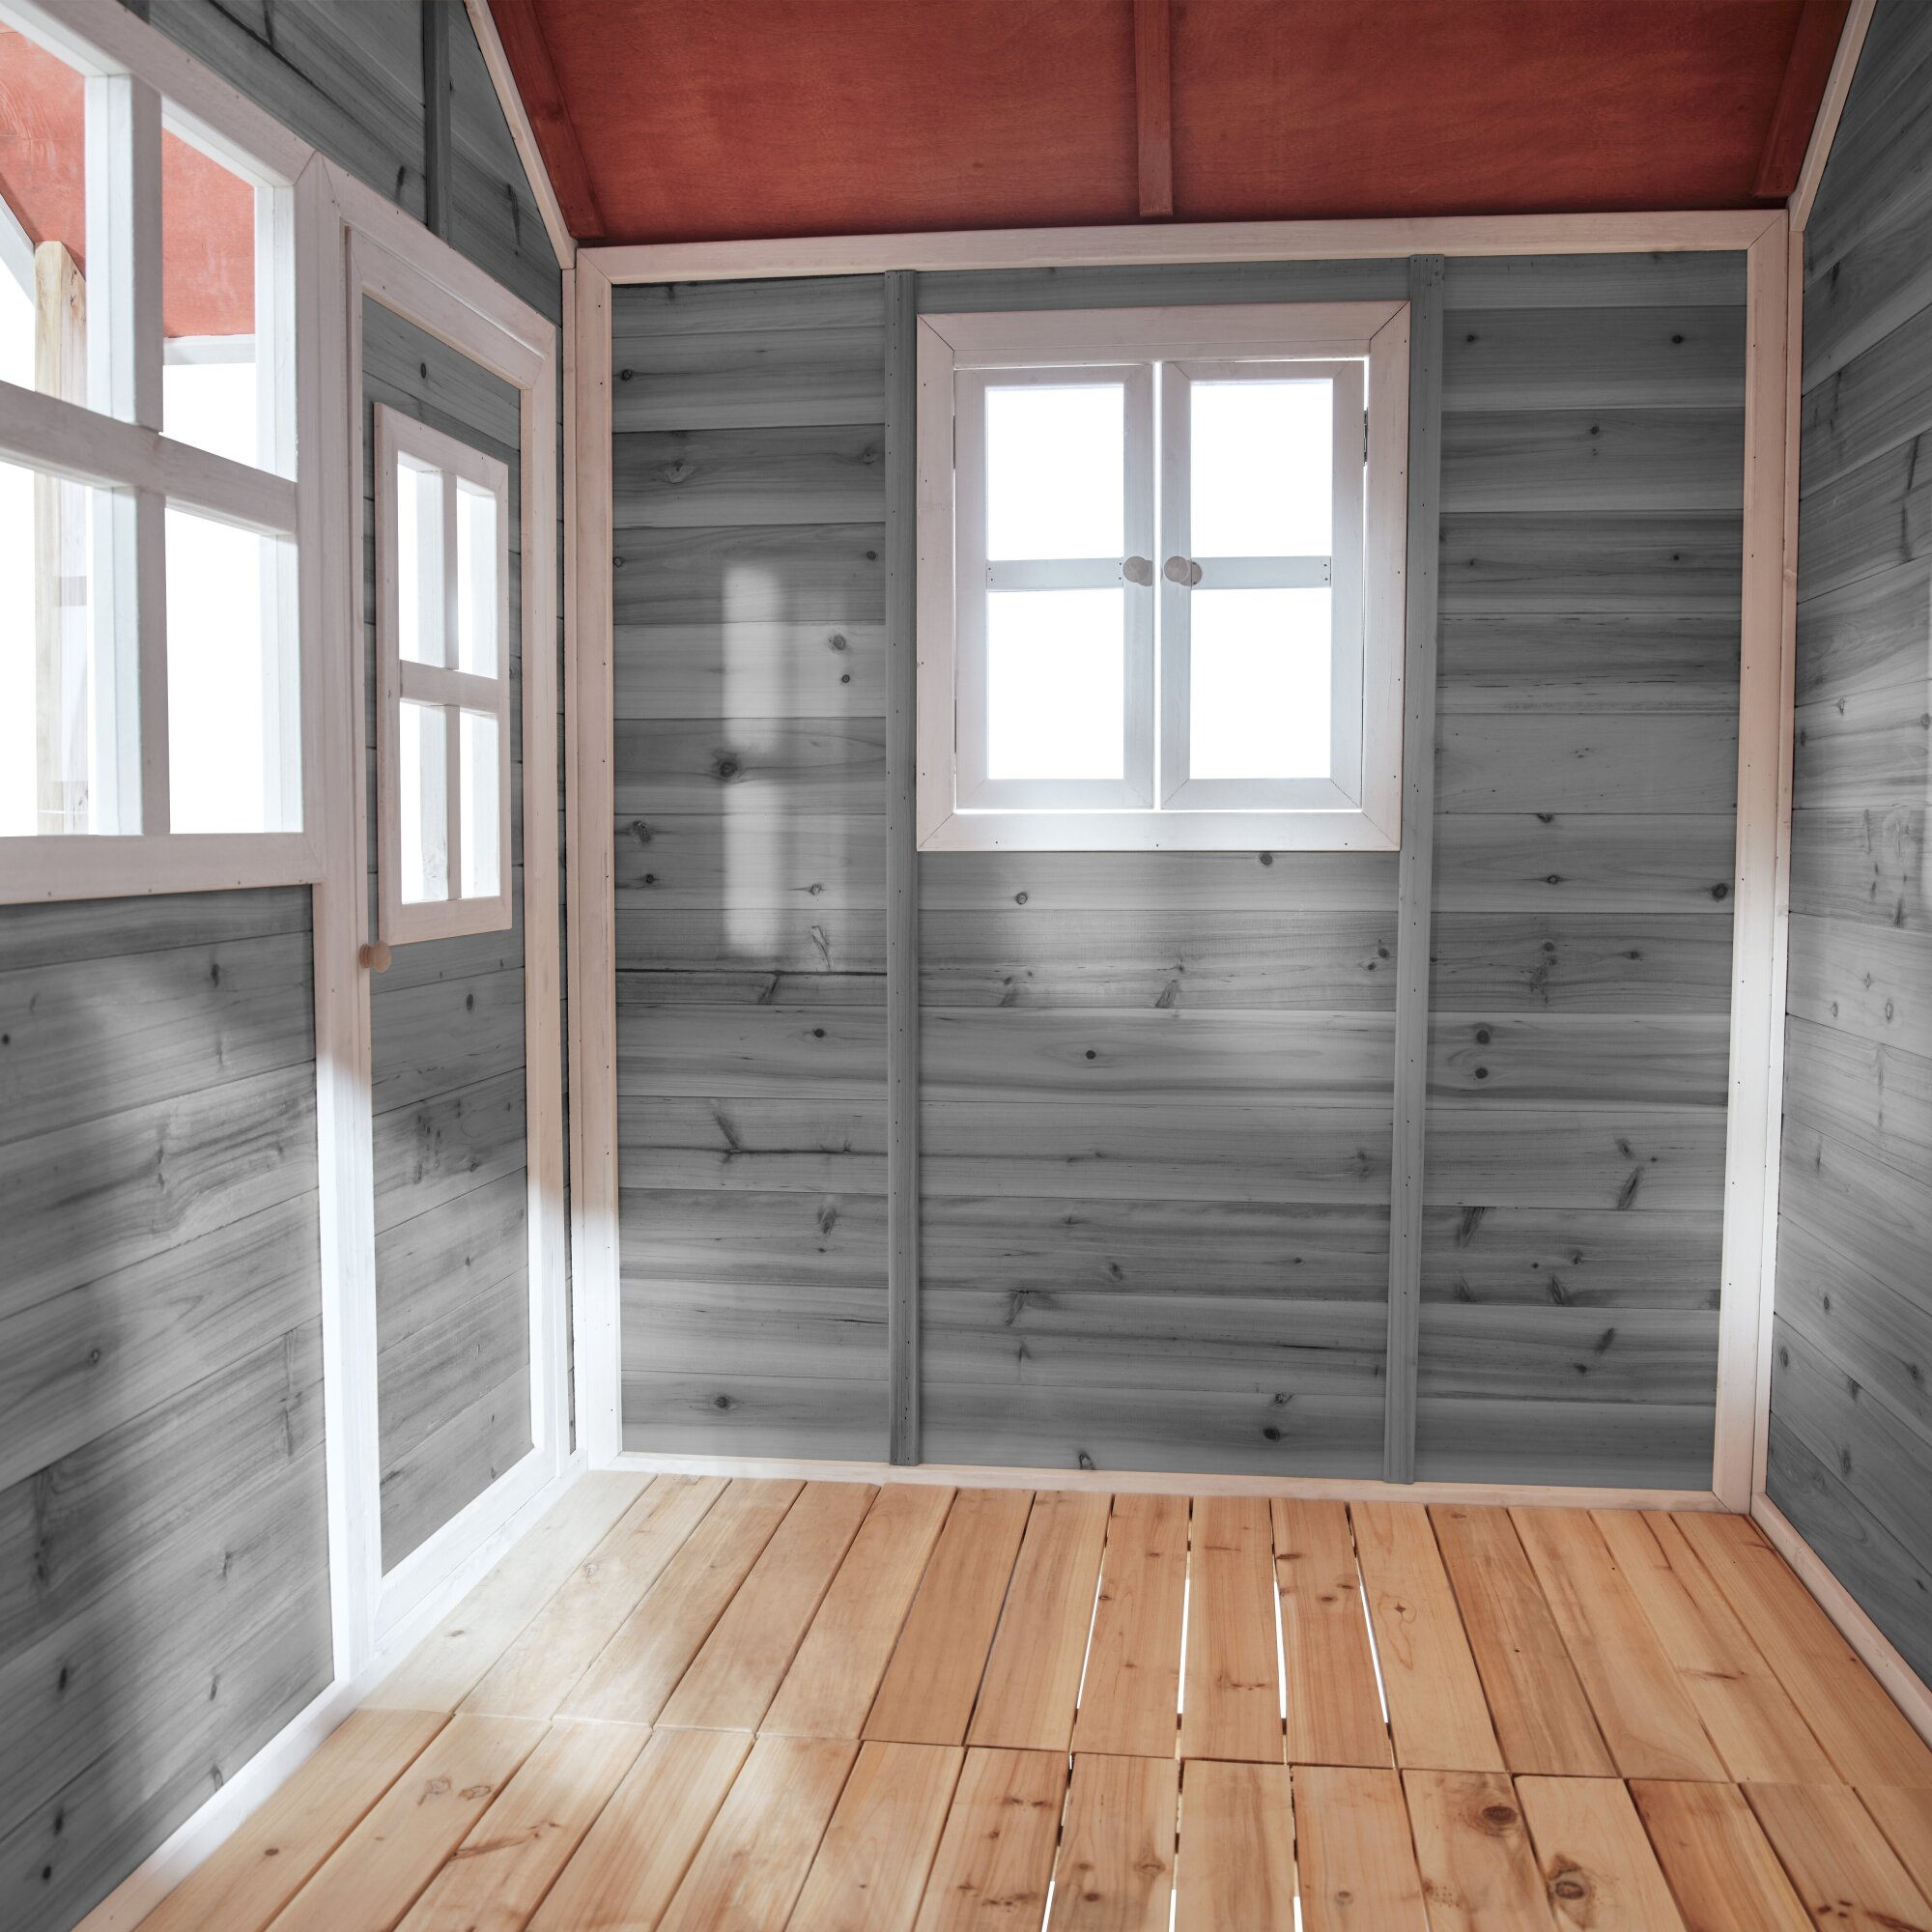 EXIT Loft 750 wooden playhouse - grey